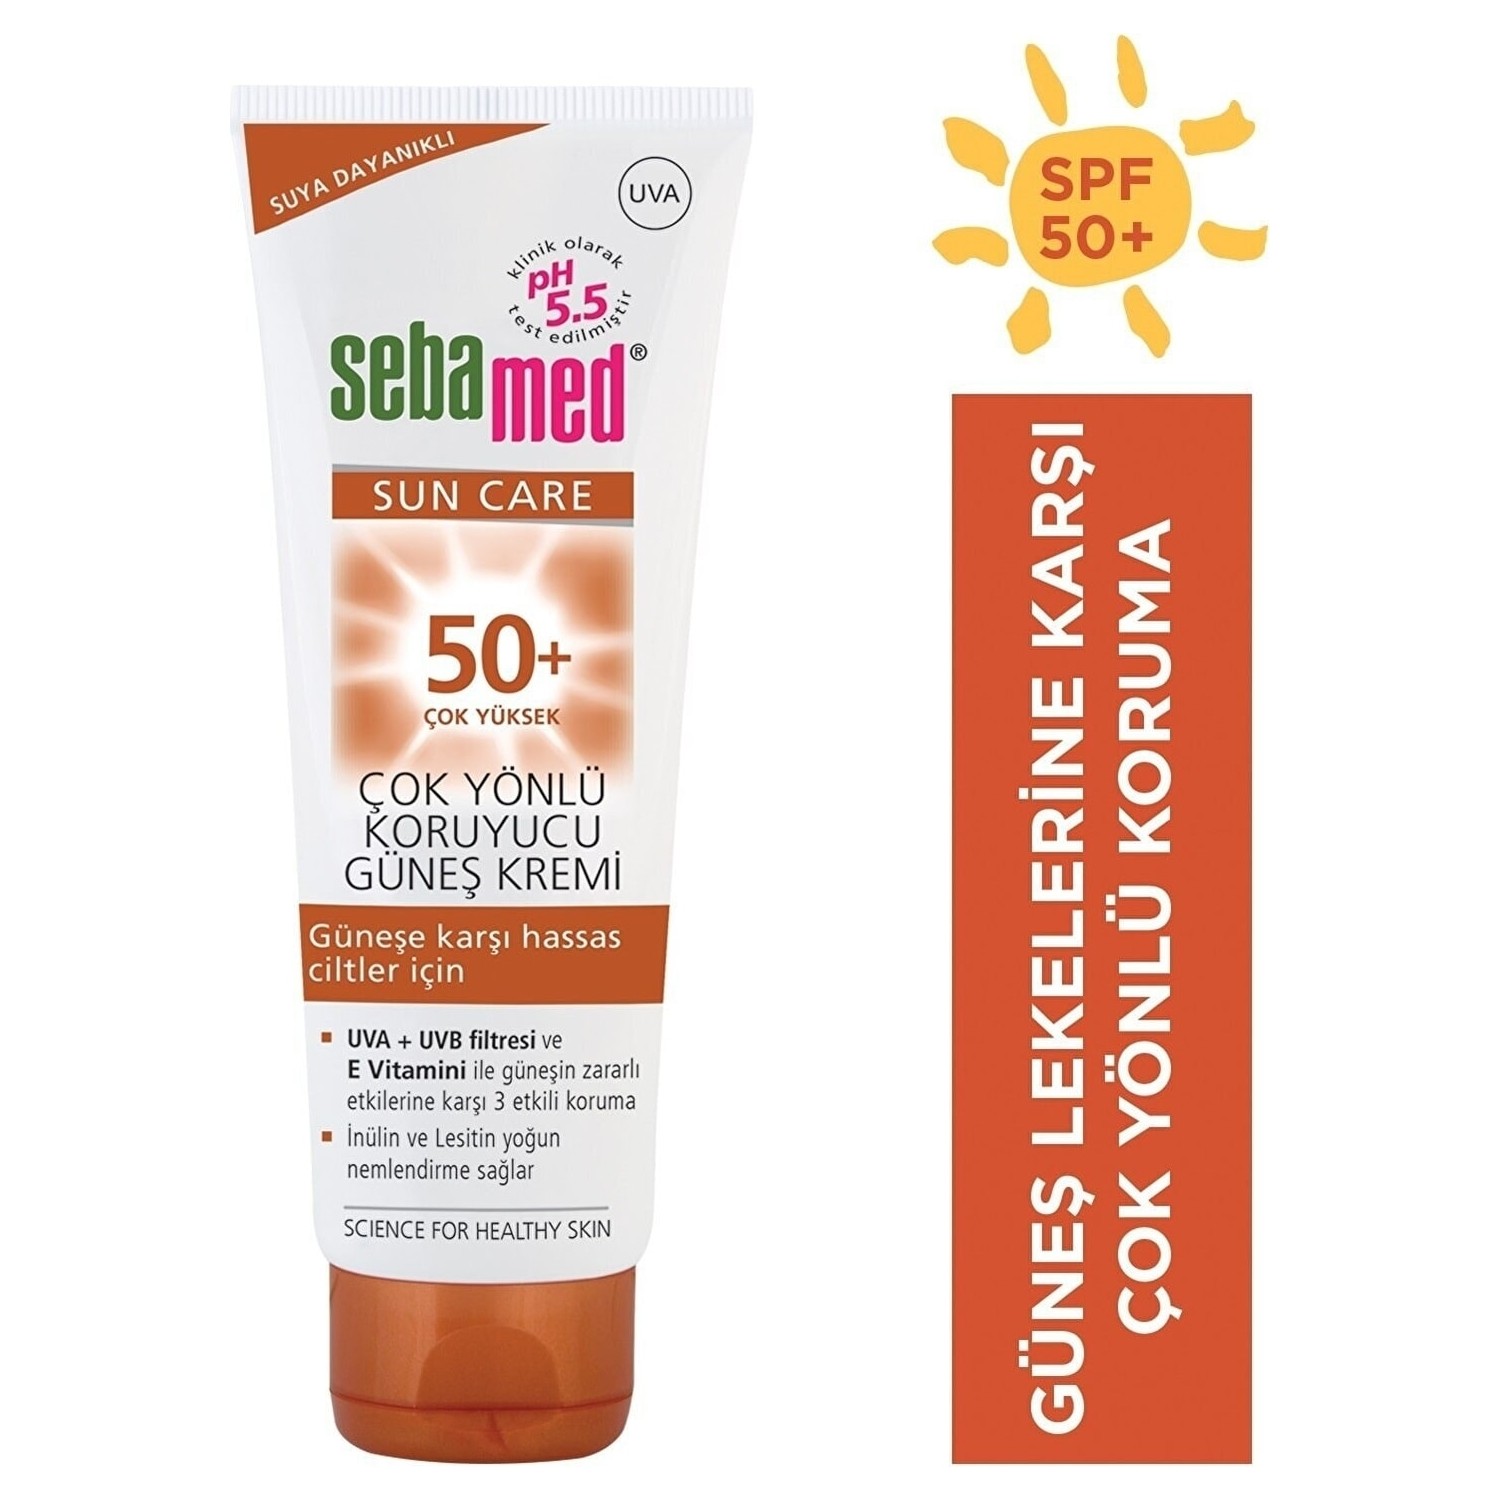 Солнцезащитный крем Sebamed Sun SPF 50, 50 мл крем солнцезащитный тонирующий spf 50 eau thermale avene sun 50 мл